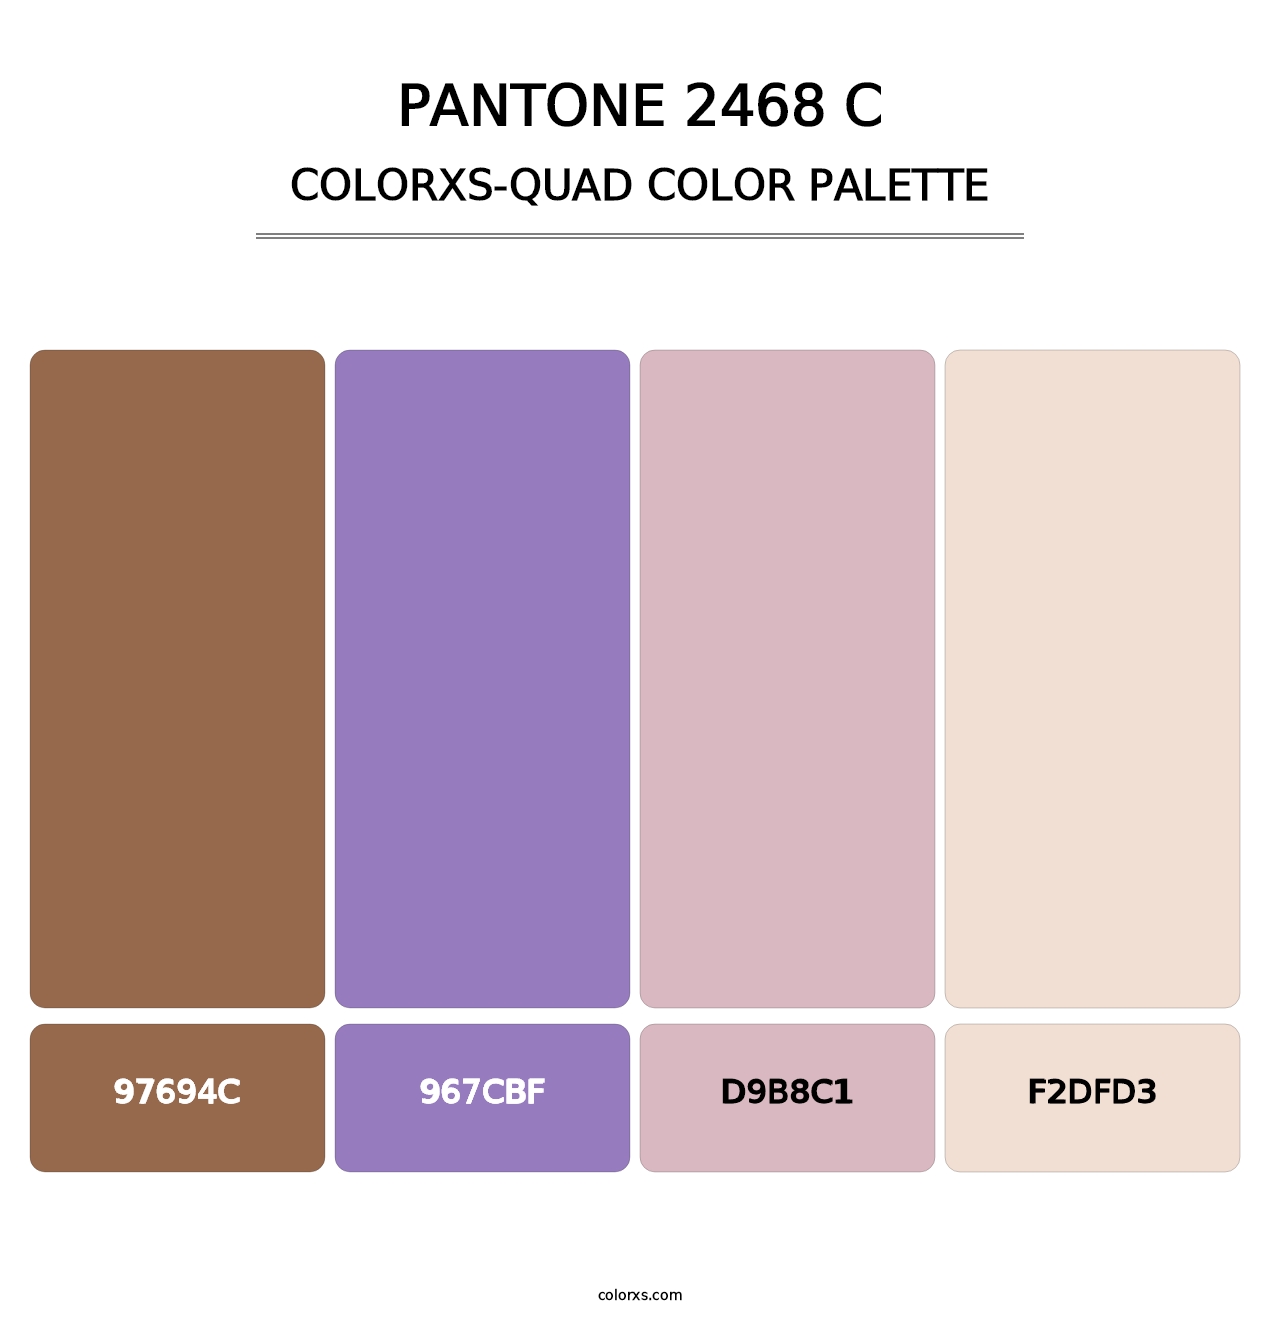 PANTONE 2468 C - Colorxs Quad Palette